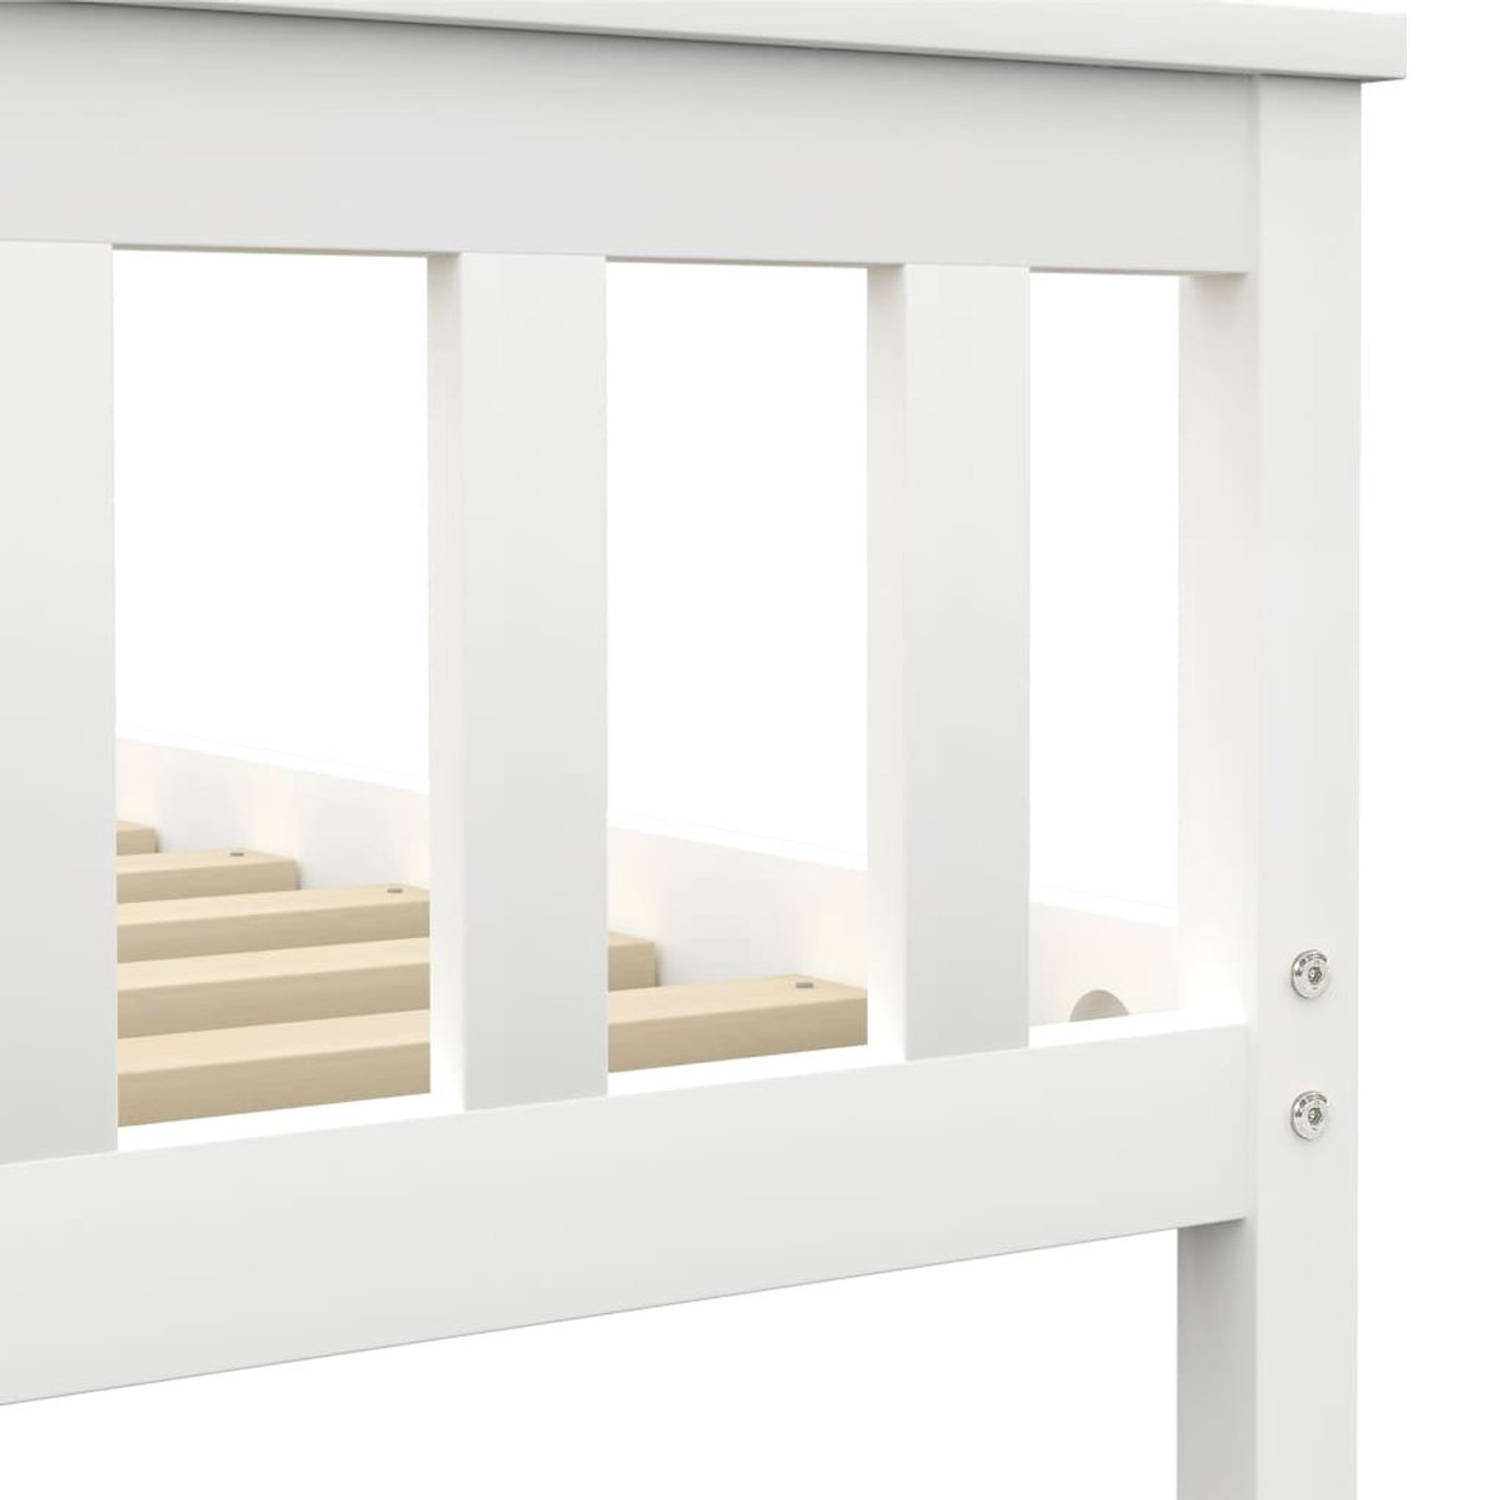 The Living Store Bed - massief grenenhouten frame - wit - 208 x 128 x 82 cm - geschikt voor 120 x 200 cm matras